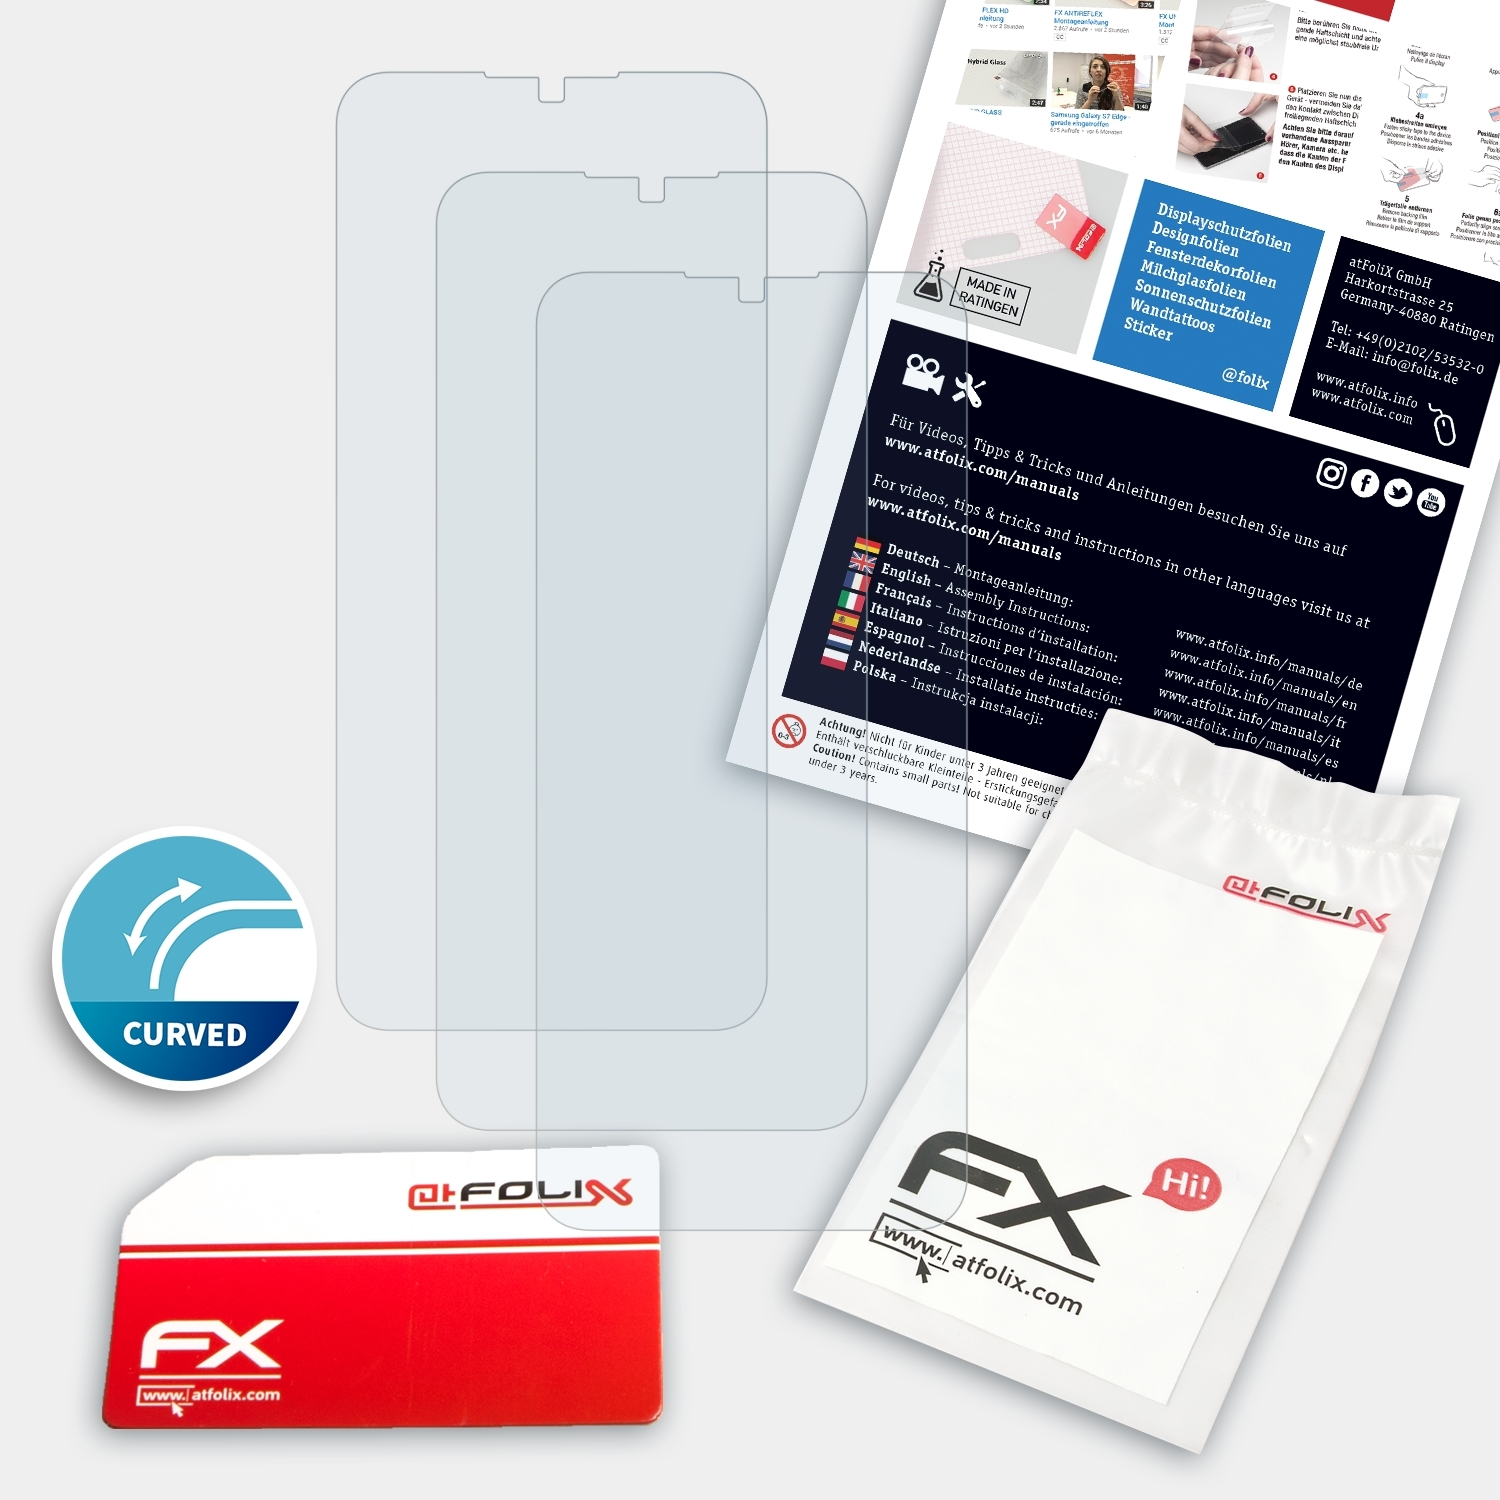 Oppo 3x Realme FX-ActiFleX Displayschutz(für ATFOLIX 5)